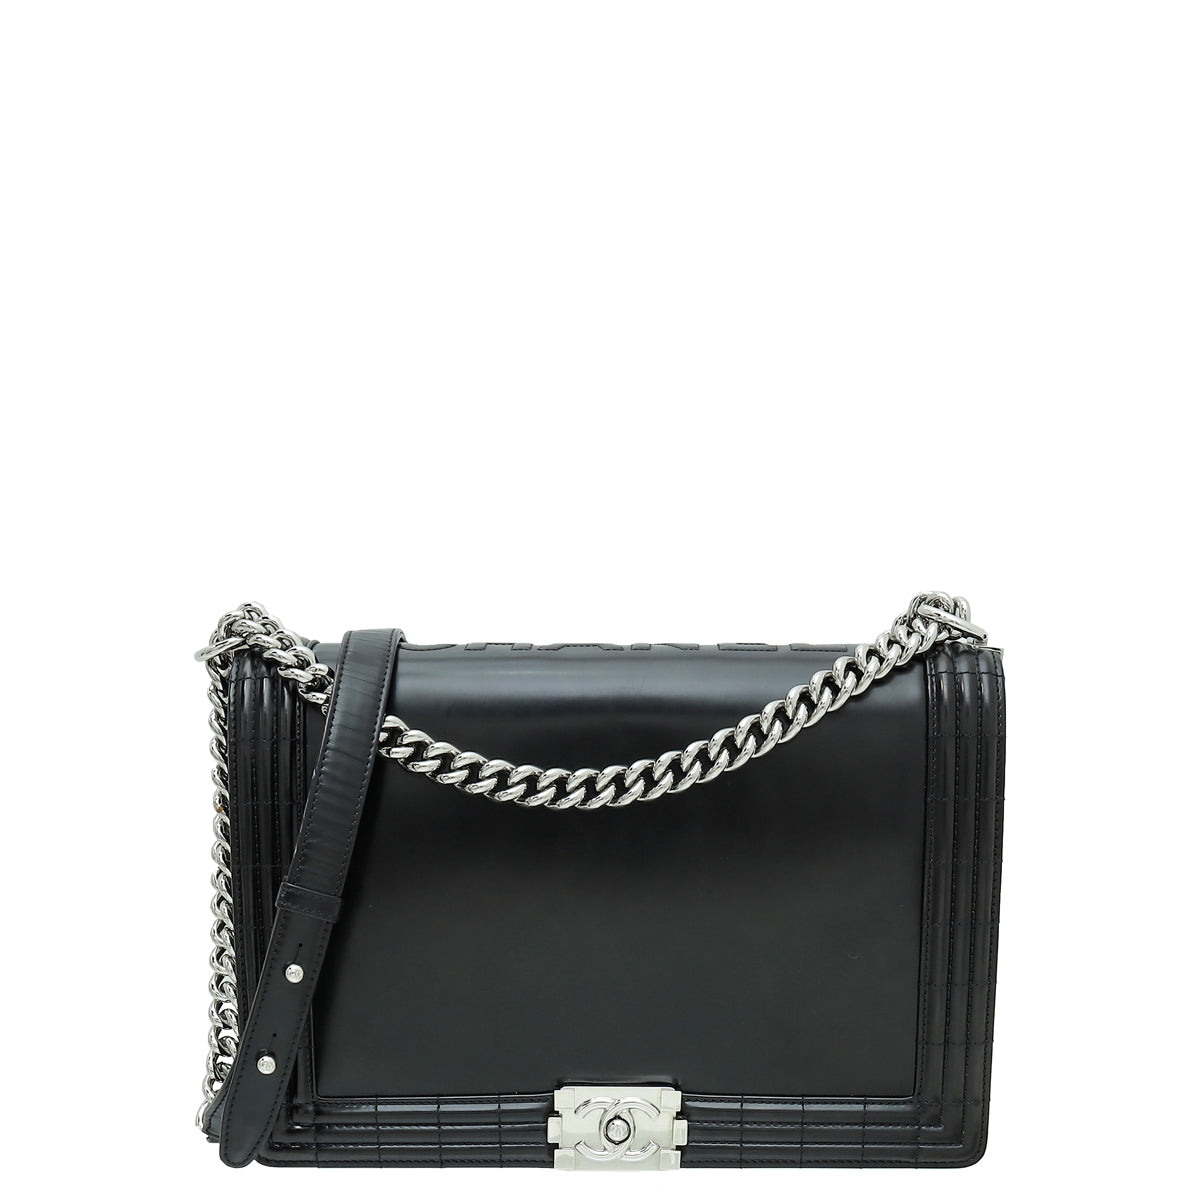 D' Borse Boutique - Chanel Le Boy Vertical Flap Bag In Black